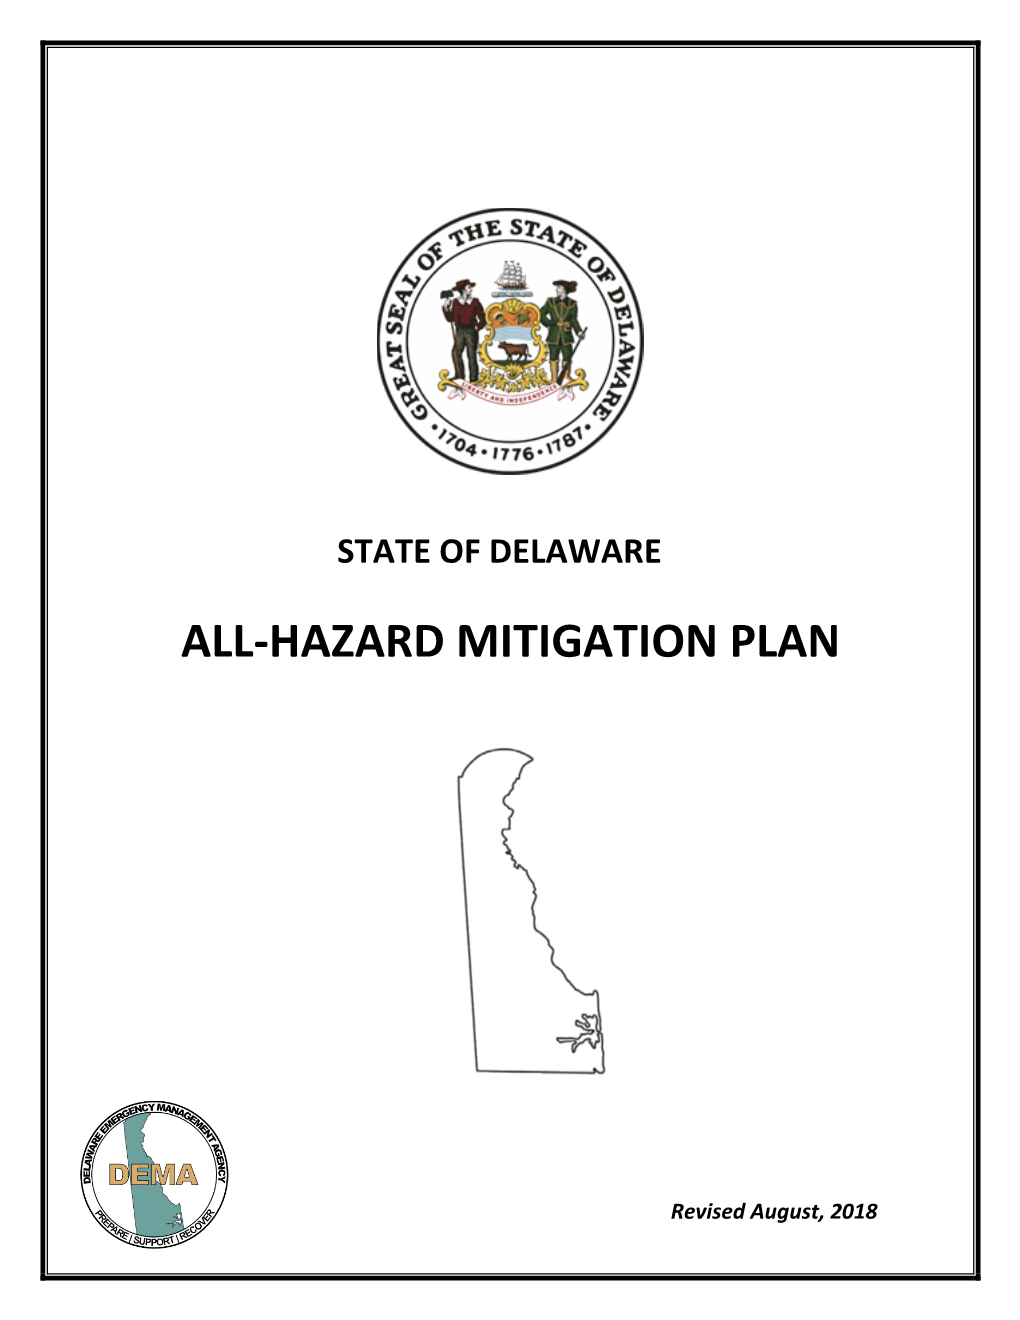 All-Hazard Mitigation Plan